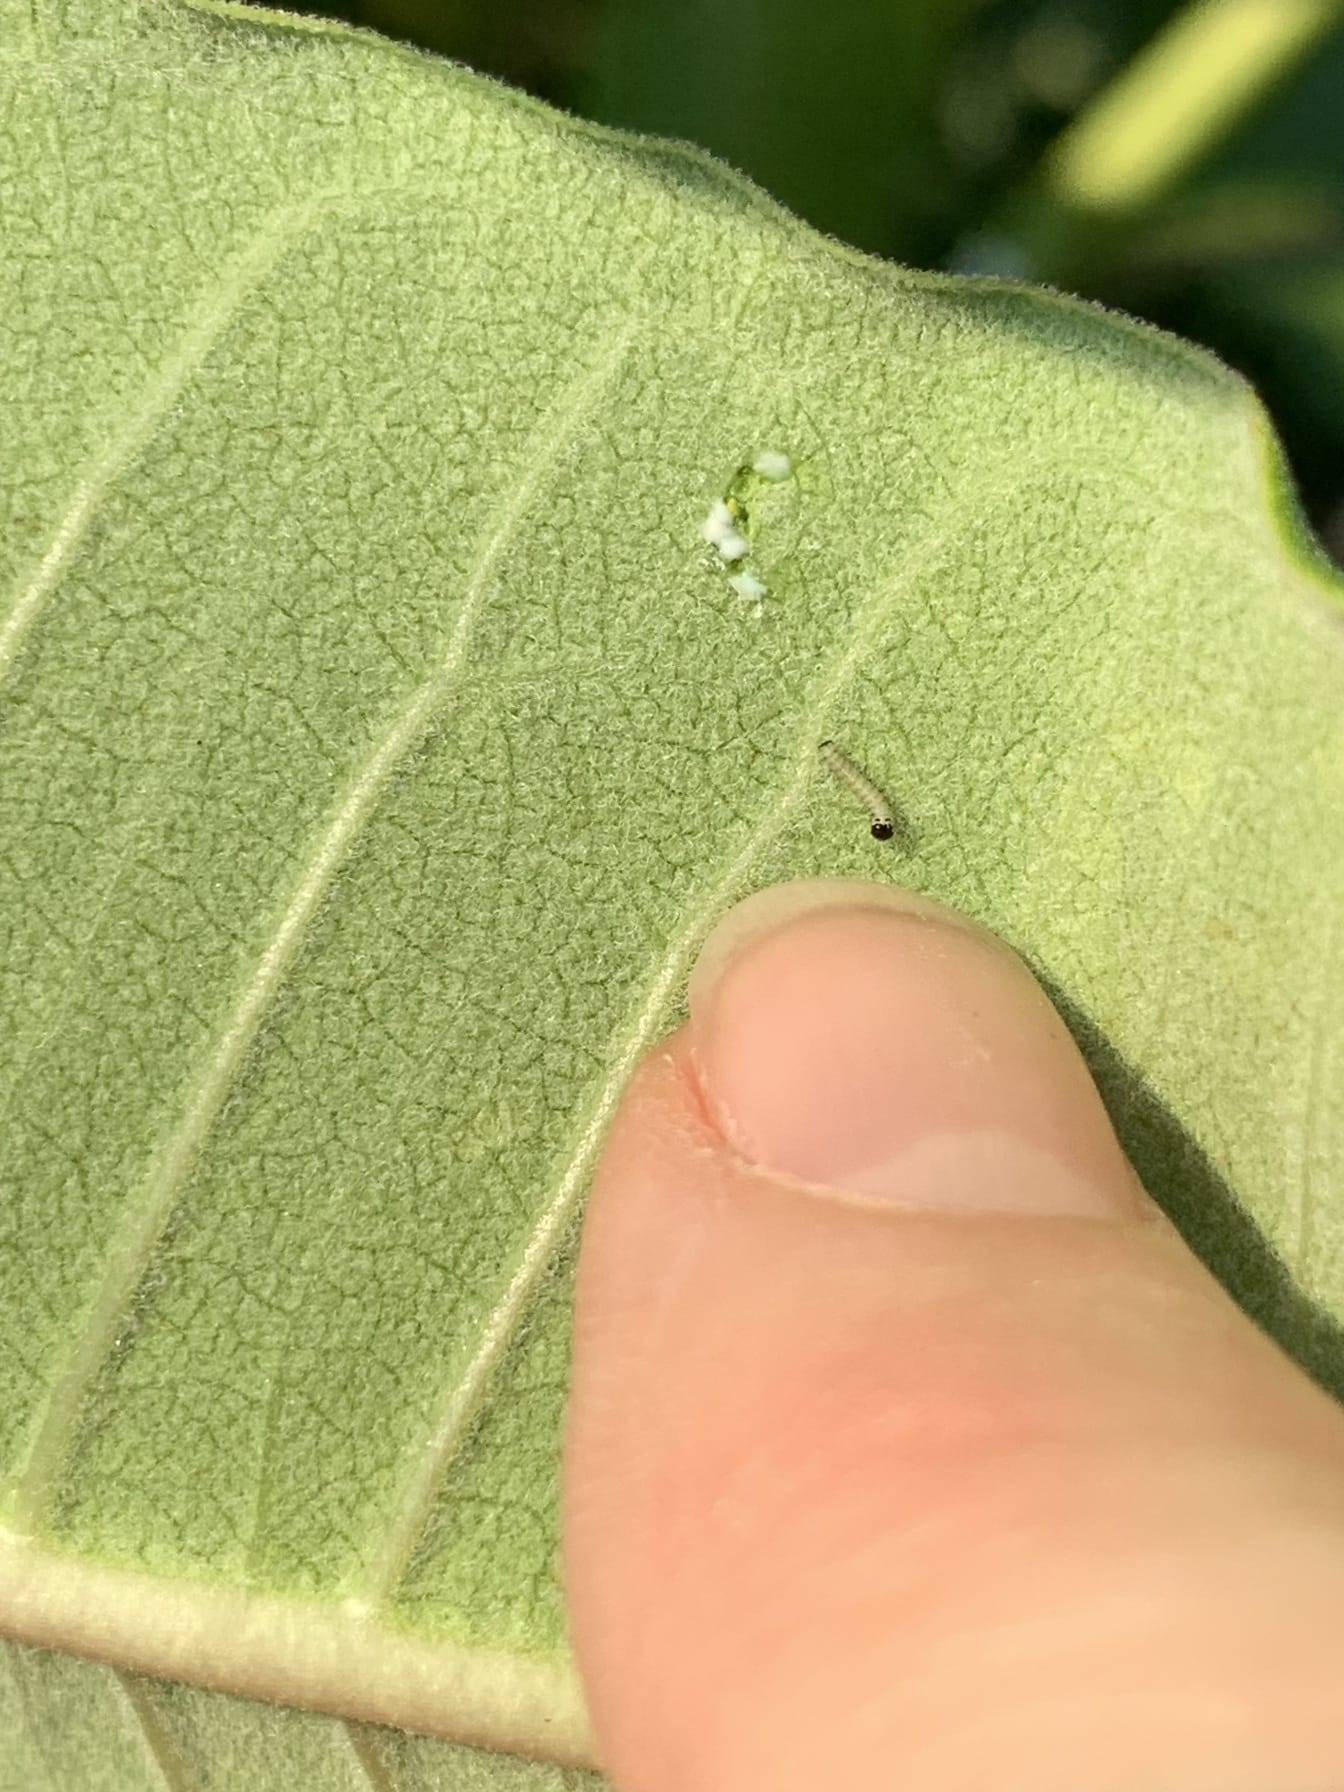 Μικροσκοπική κάμπια πεταλούδας μονάρχης σε φυτό γαλακτοπαραγωγής που εκκολάφθηκε πρόσφατα